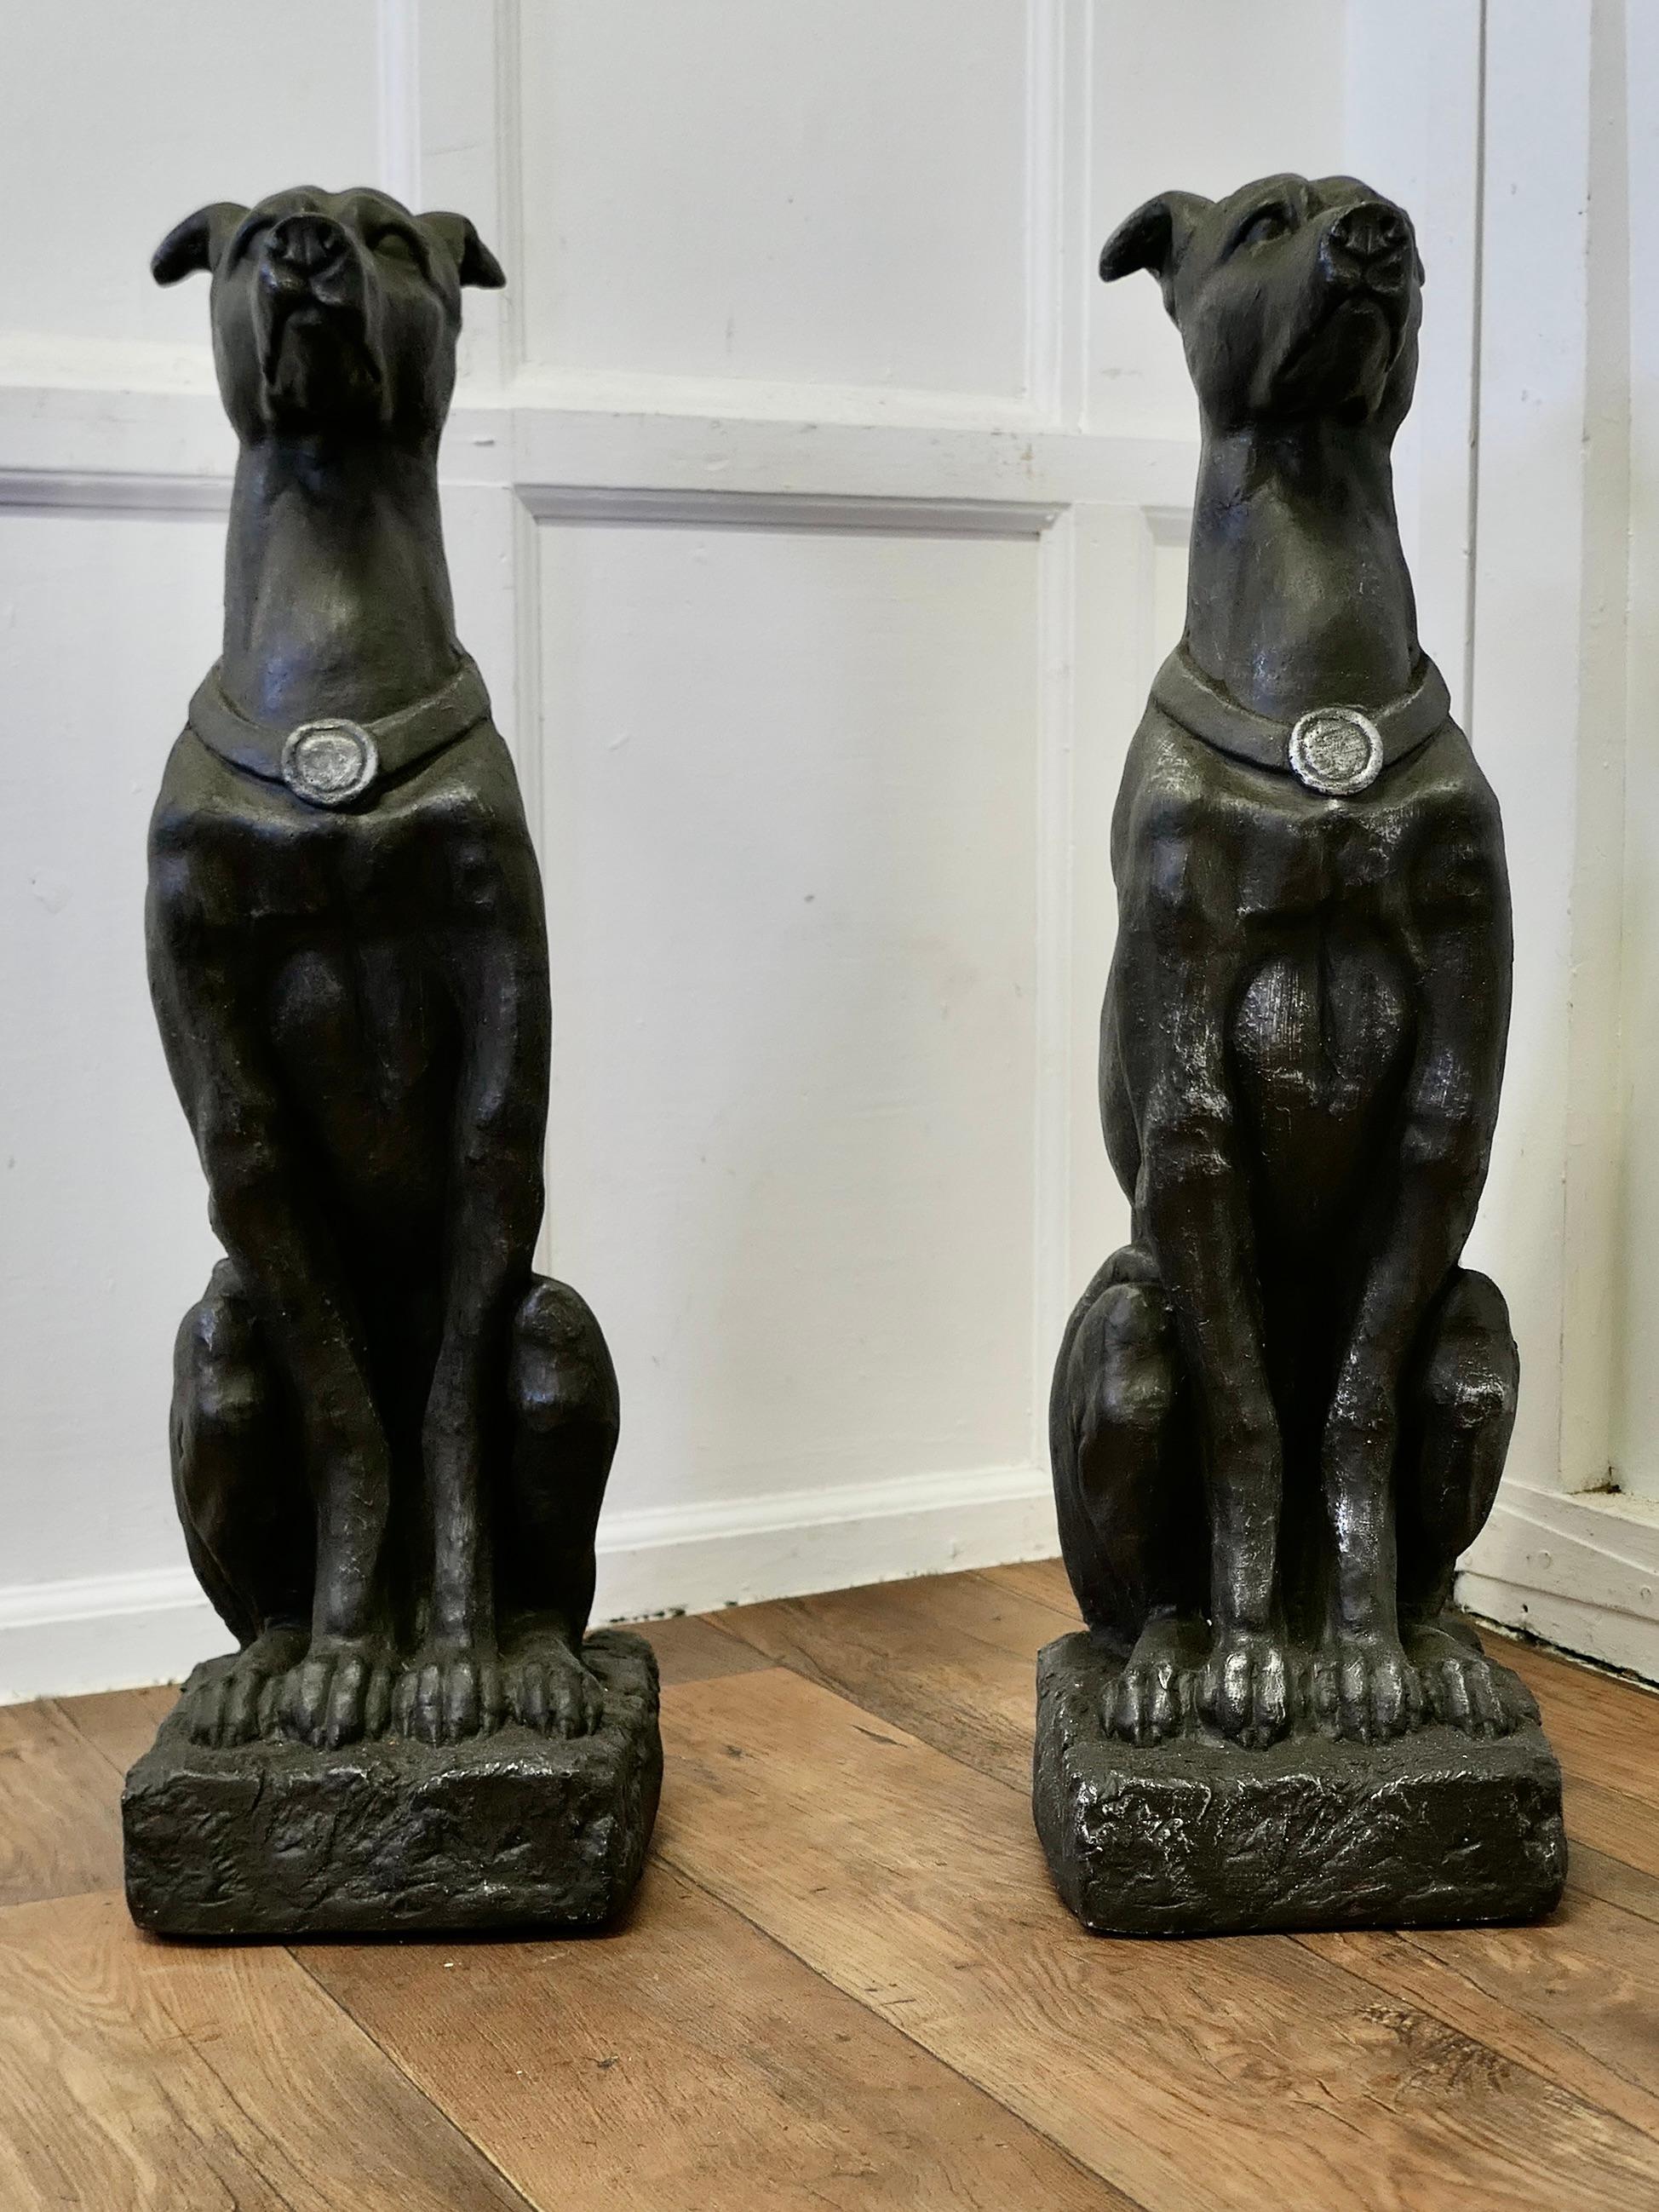 Paar große skulptierte Windhunde

Diese Super Paar Hunde hat eine gute Patina sie scheinen mit einer alten polierten Stahl-Finish gemacht werden
Sie sind in sehr gutem Zustand mit einer schön gealterten Patina

Die Greyhounds sind 31